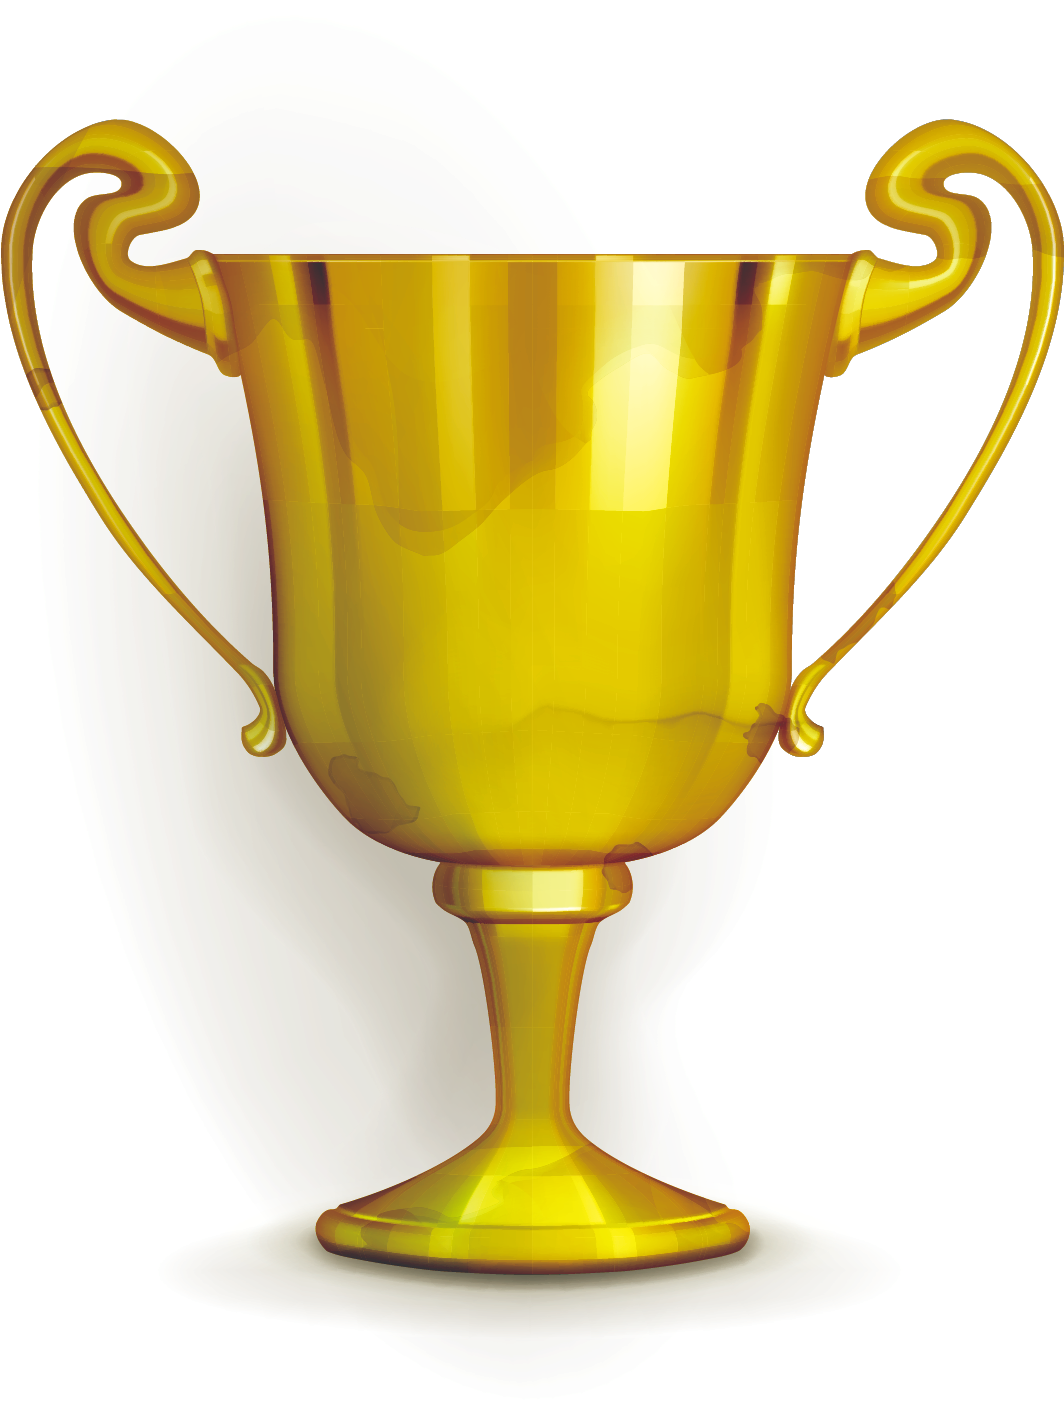 Gold Medal Trophy Cup - Gold Medal Trophy Cup (1521x1589)